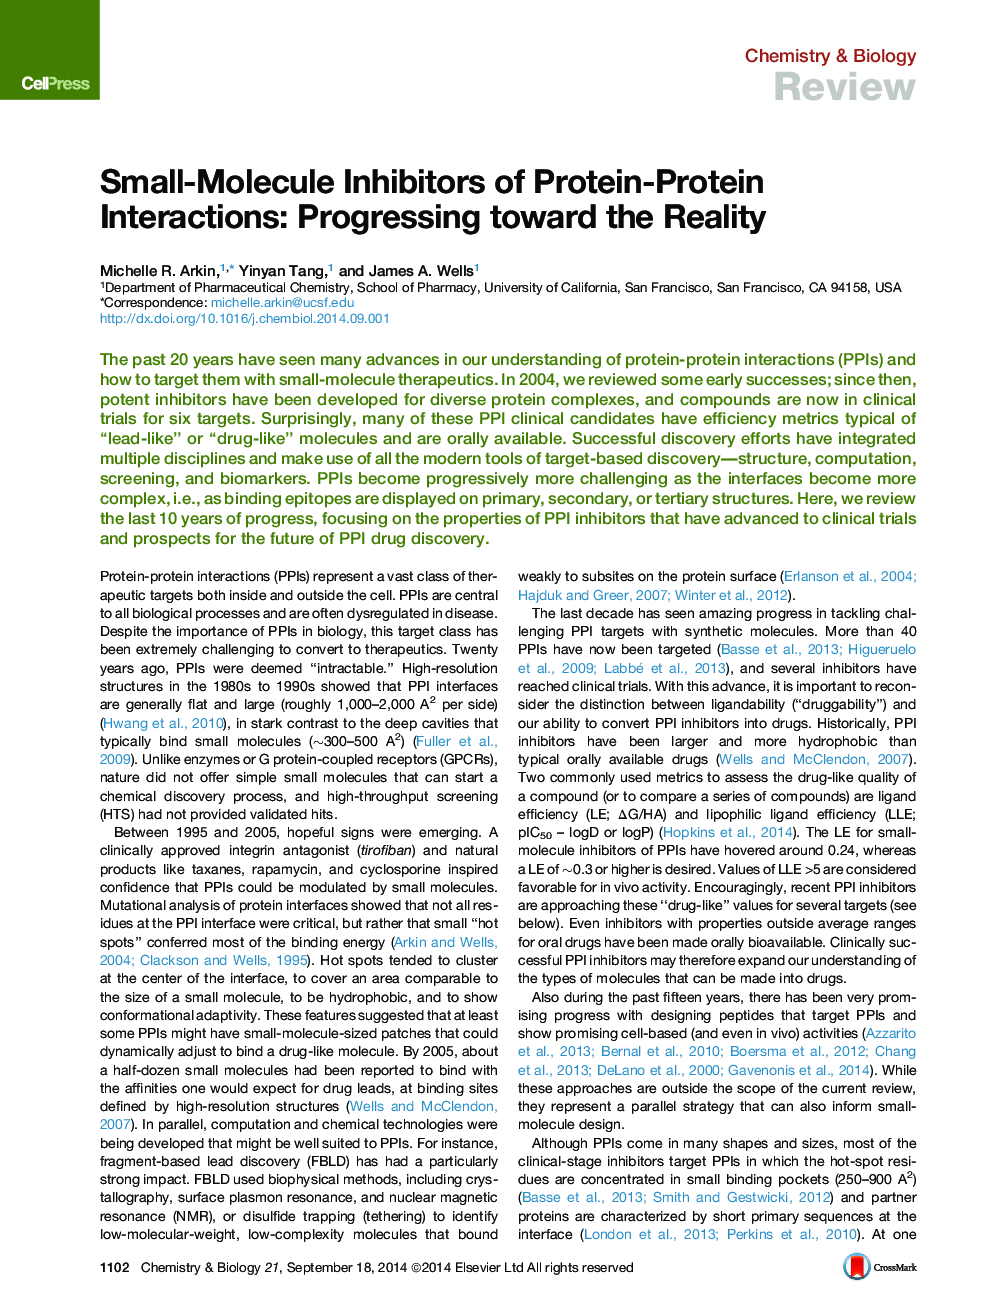 مهار کننده های کوچک مولکول های متابولیسم پروتئین: پیشرفت به سوی واقعیت 